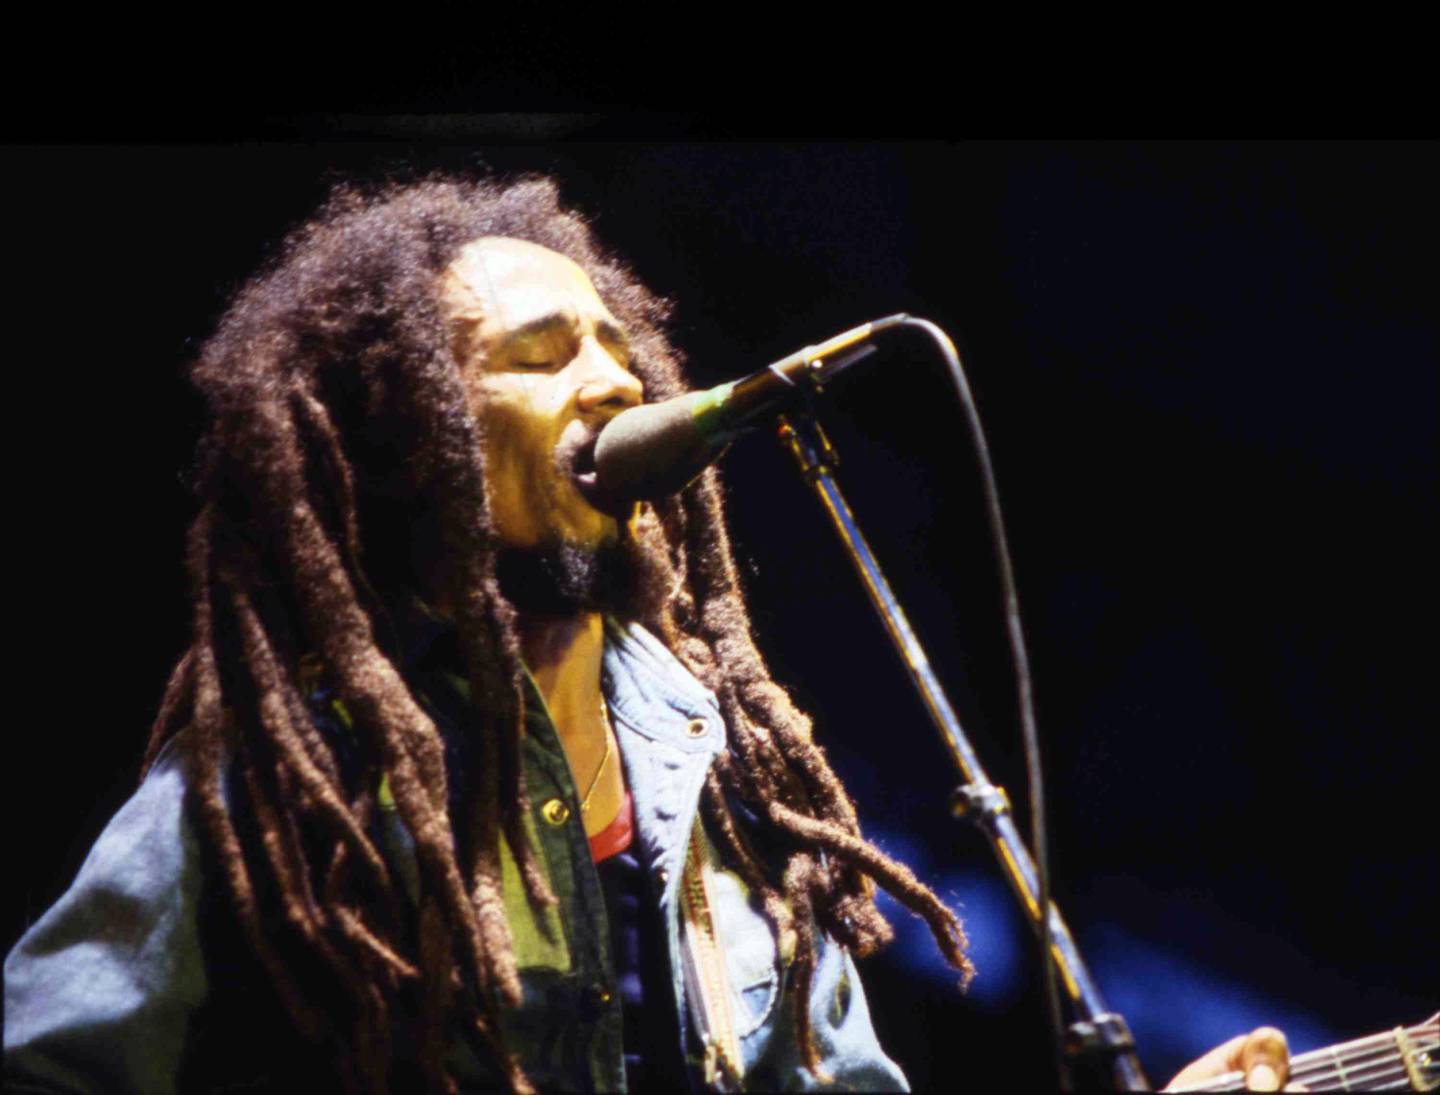 Bob Marley ga først ut "Small Axe" i 1971.